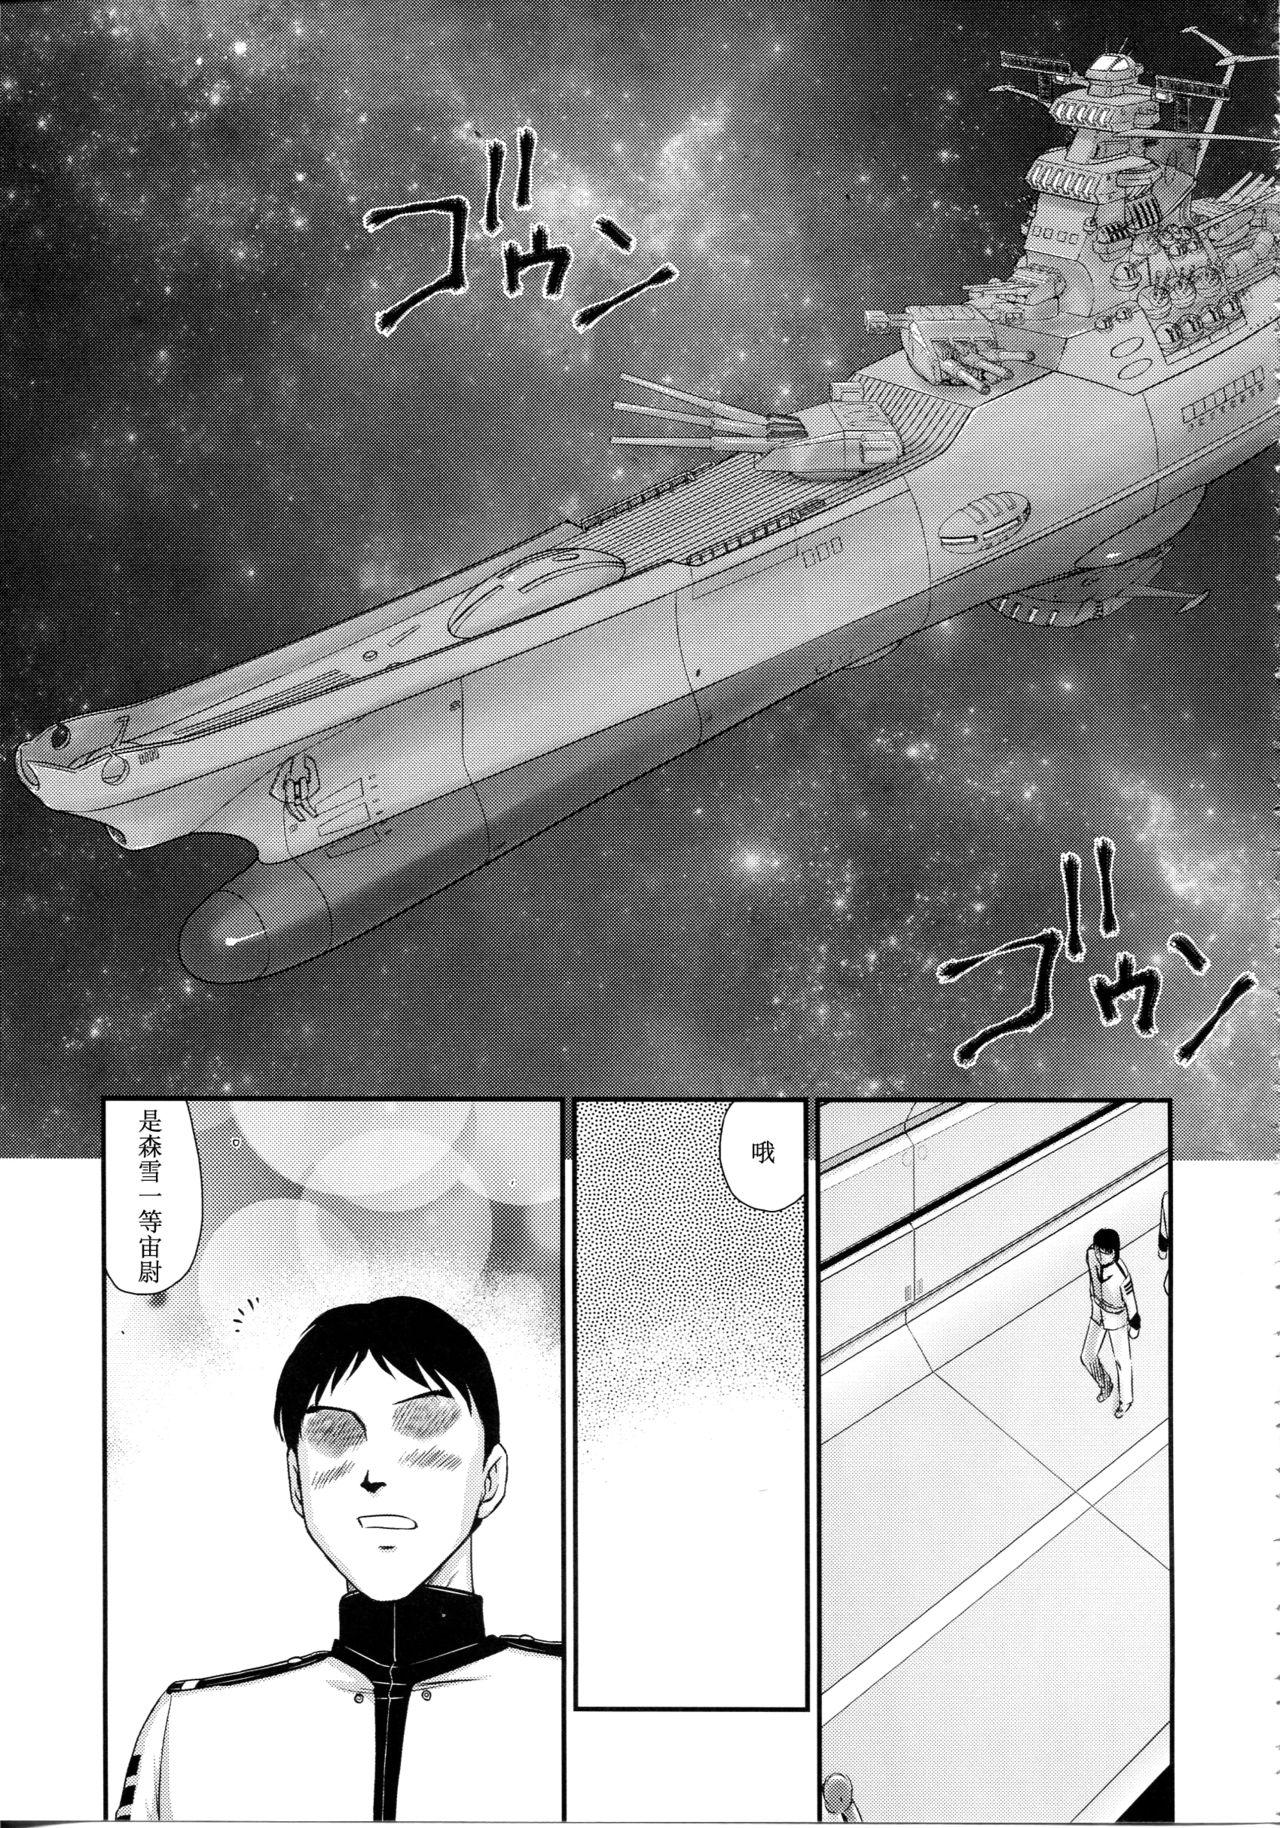 Twistys Yuki no Shizuku - Space battleship yamato 2199 Van - Page 10